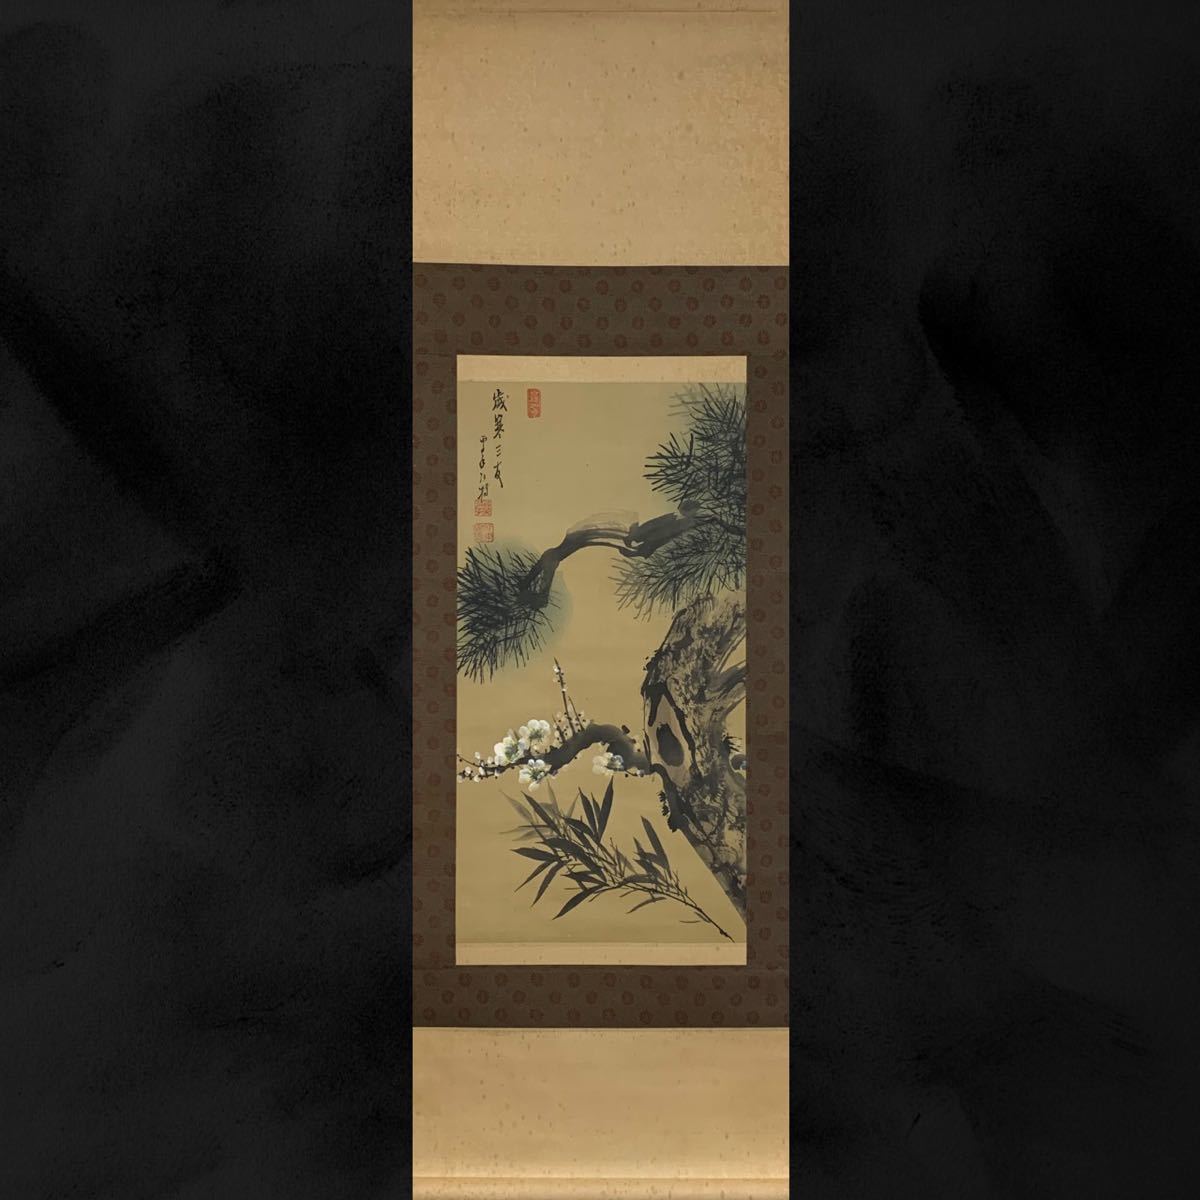 [副本] (29) 带签名的中国艺术挂轴, 冬天的三个朋友, 约 134 x 44 厘米, 艺术品, 绘画, 其他的